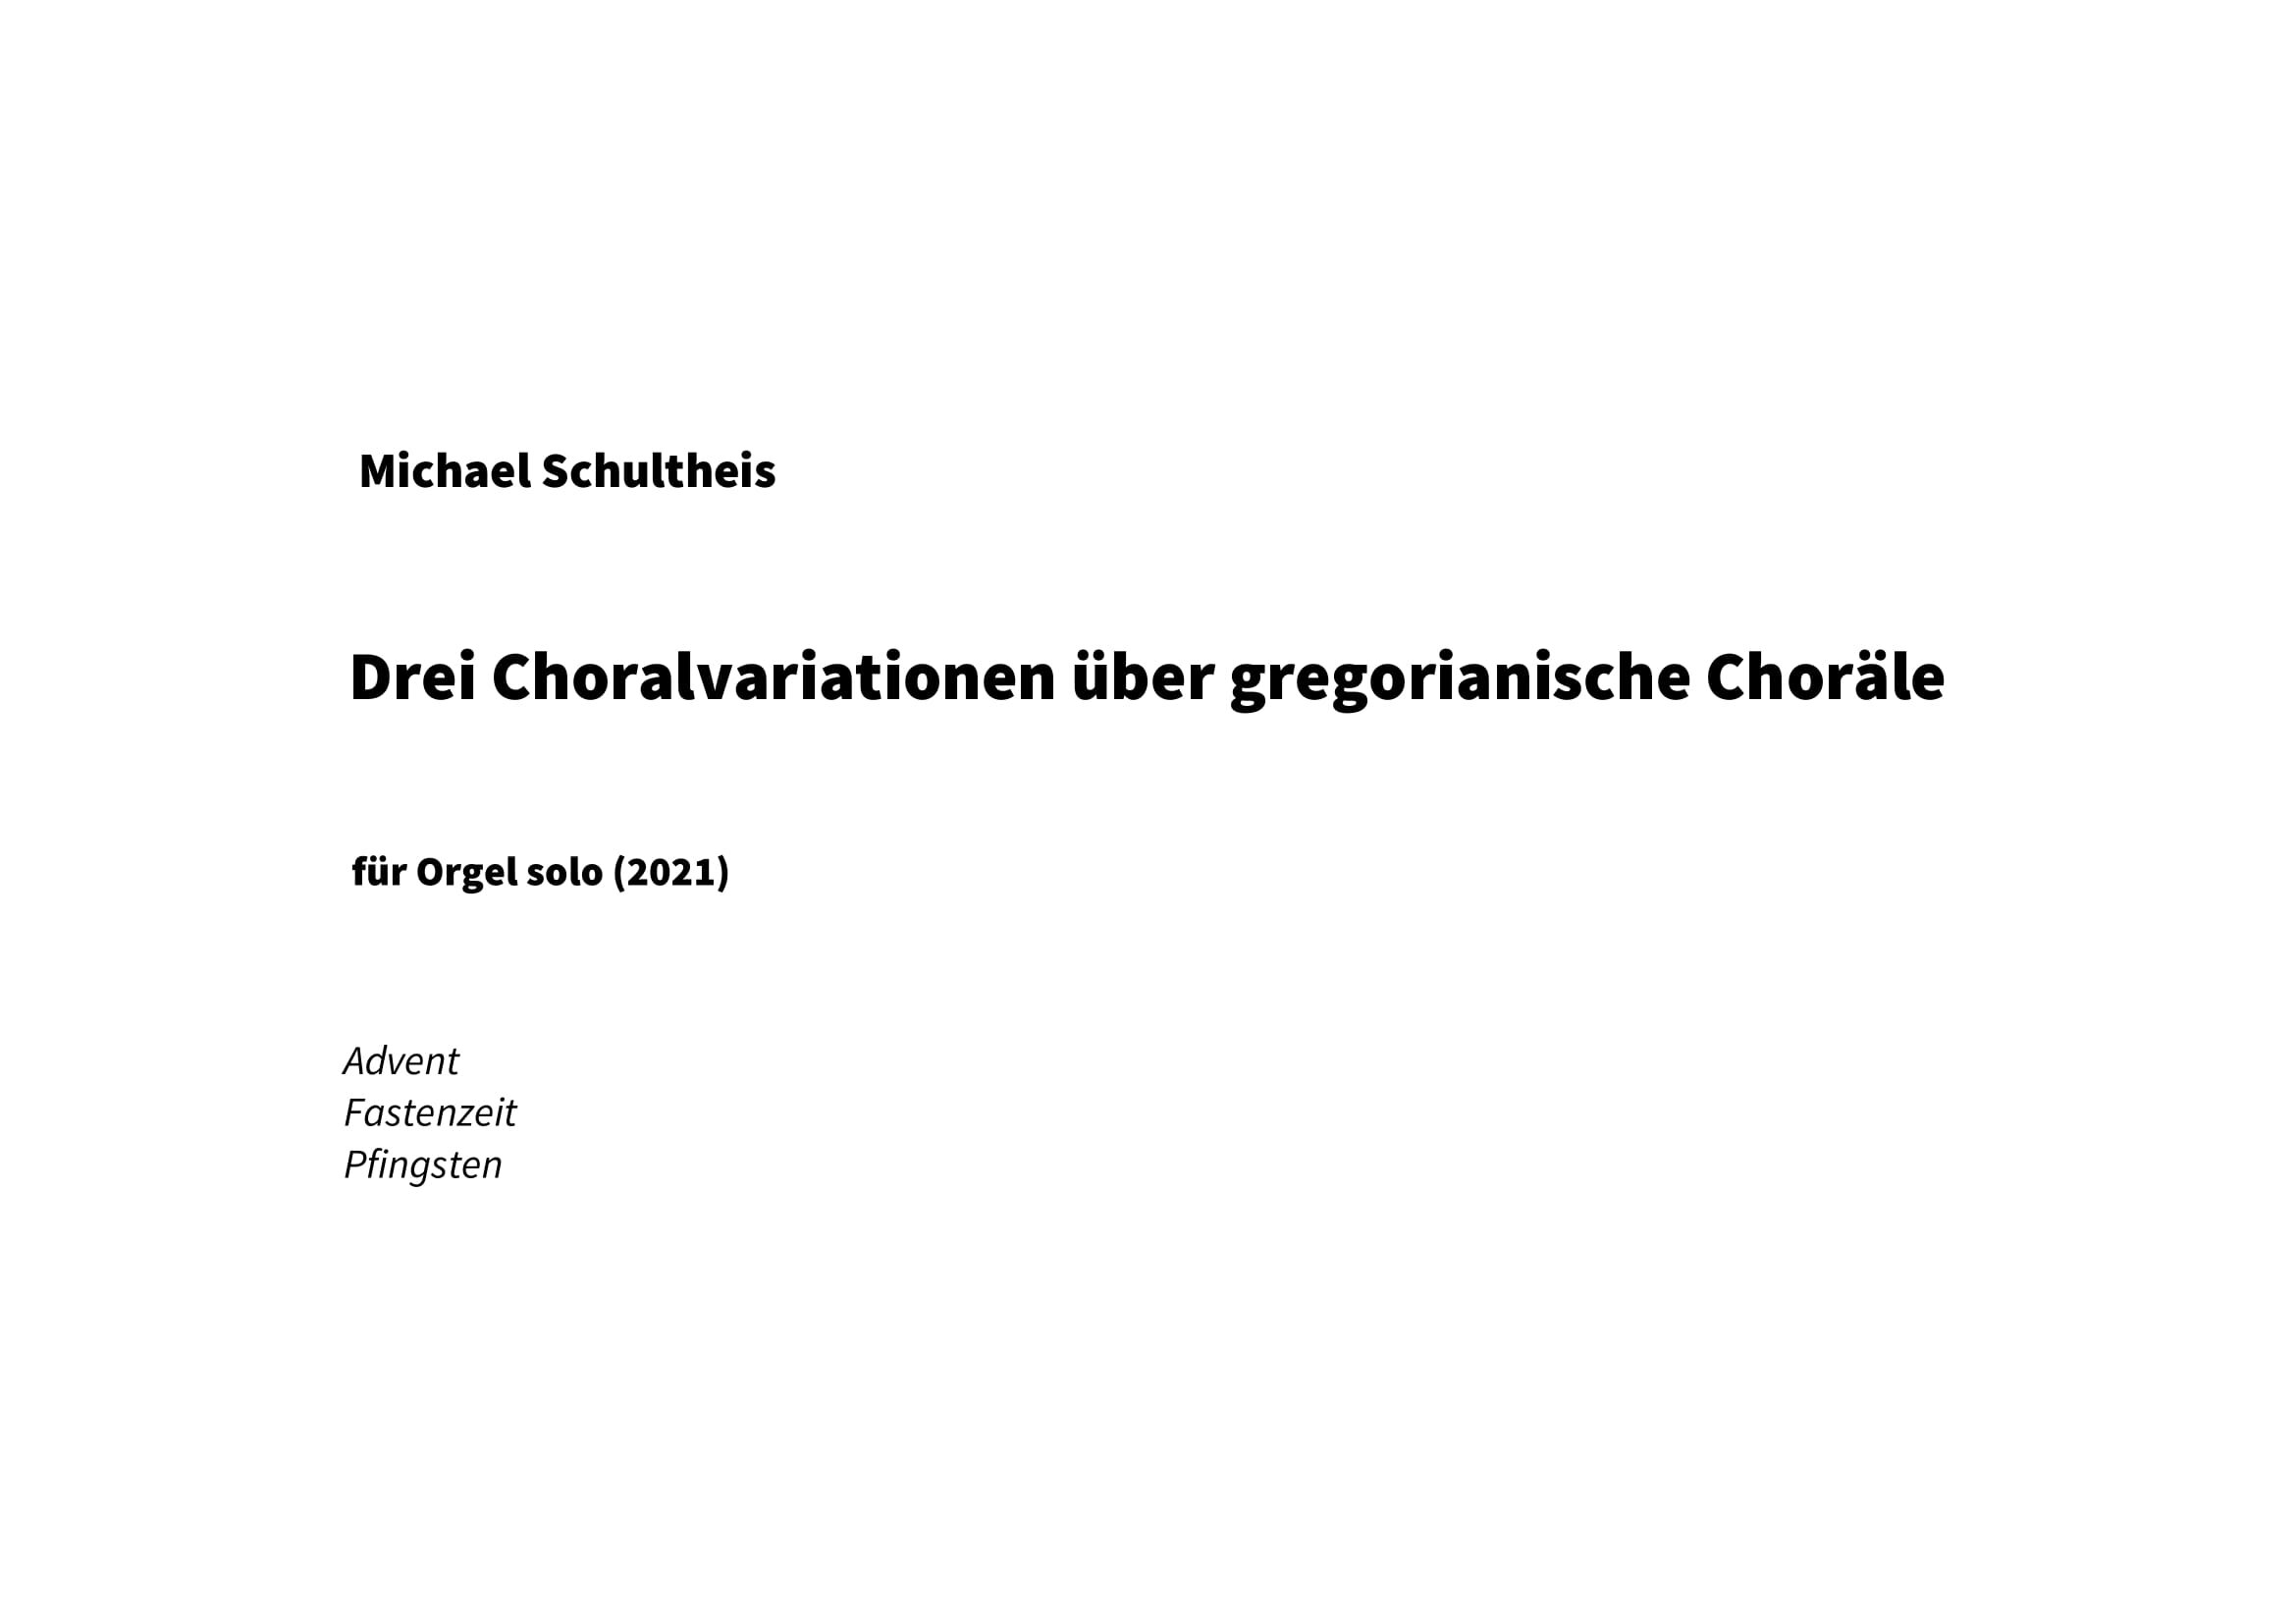 Schultheis - Drei Choralvariationen (2021)-01.jpg